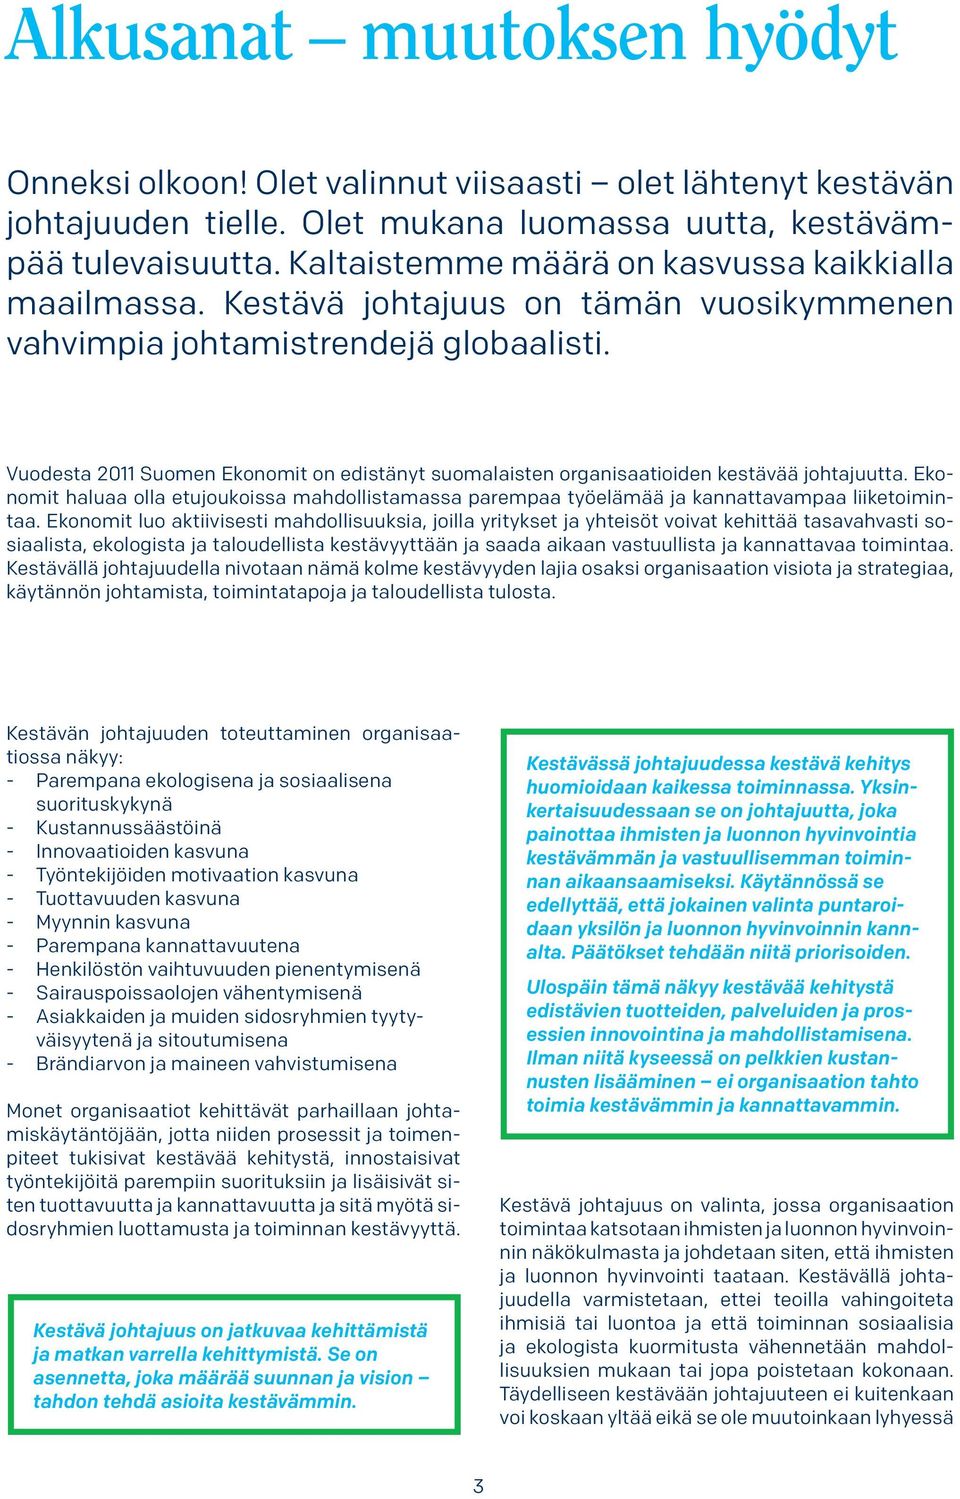 Vuodesta 2011 Suomen Ekonomit on edistänyt suomalaisten organisaatioiden kestävää johtajuutta. Ekonomit haluaa olla etujoukoissa mahdollistamassa parempaa työelämää ja kannattavampaa liiketoimintaa.